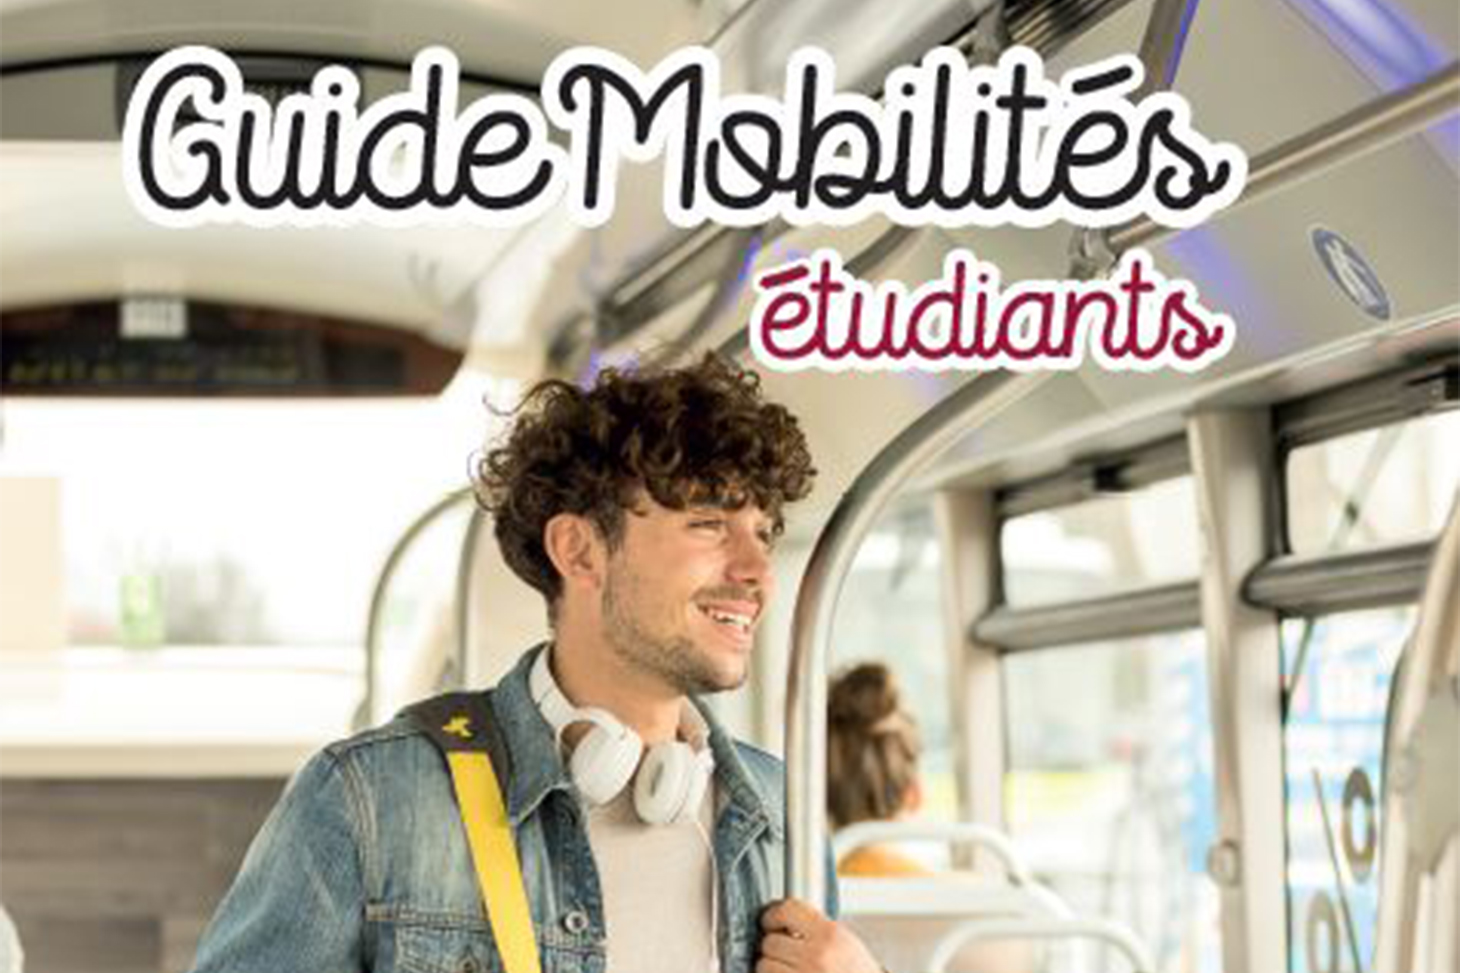 Le Guide mobilité étudiants